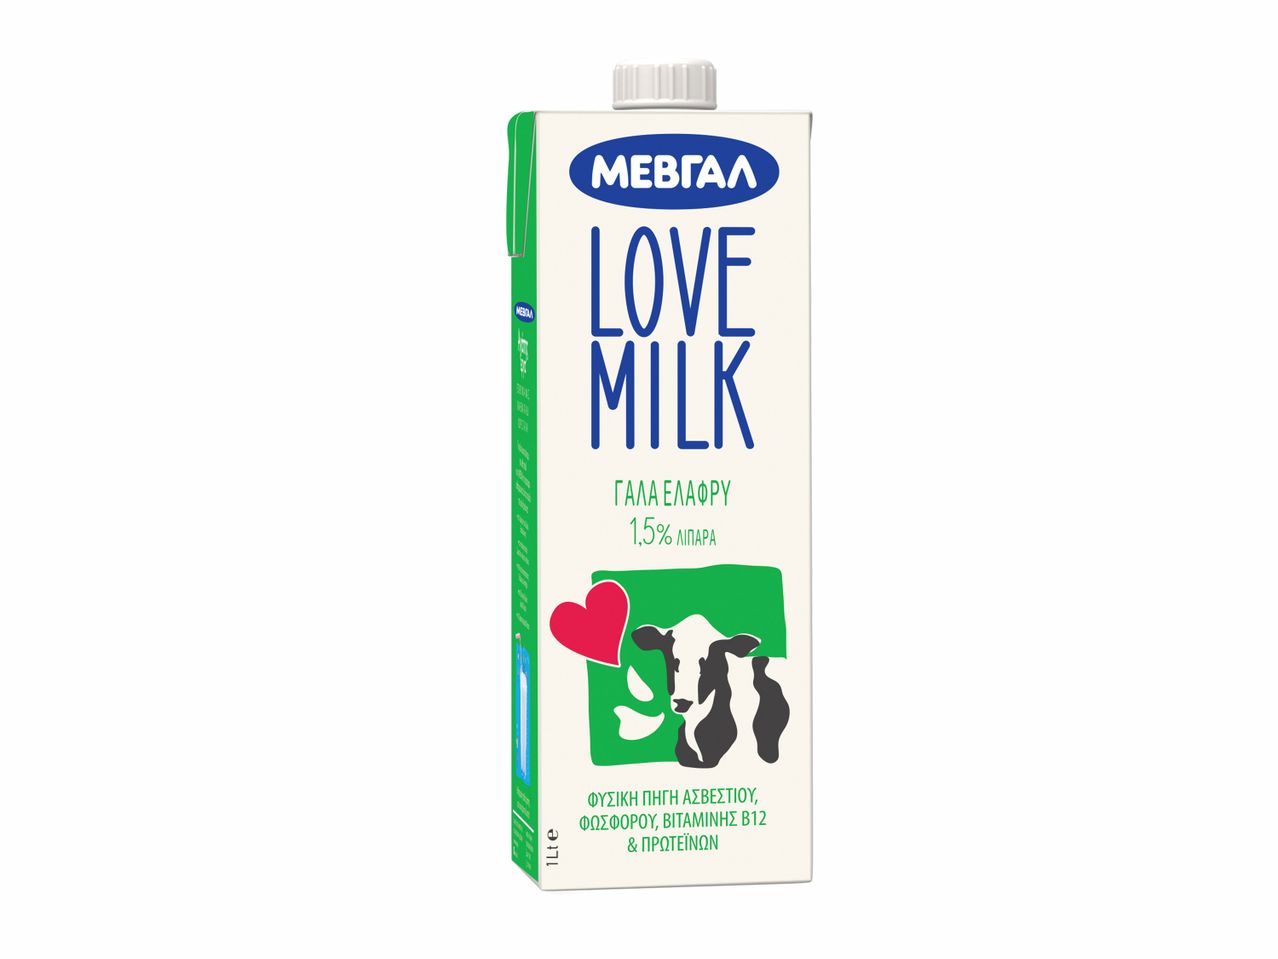 Άνοιγμα σε πλήρης οθόνη: Μεβγάλ Love Milk Γάλα 3,5% / 1,5% - Εικόνα 1